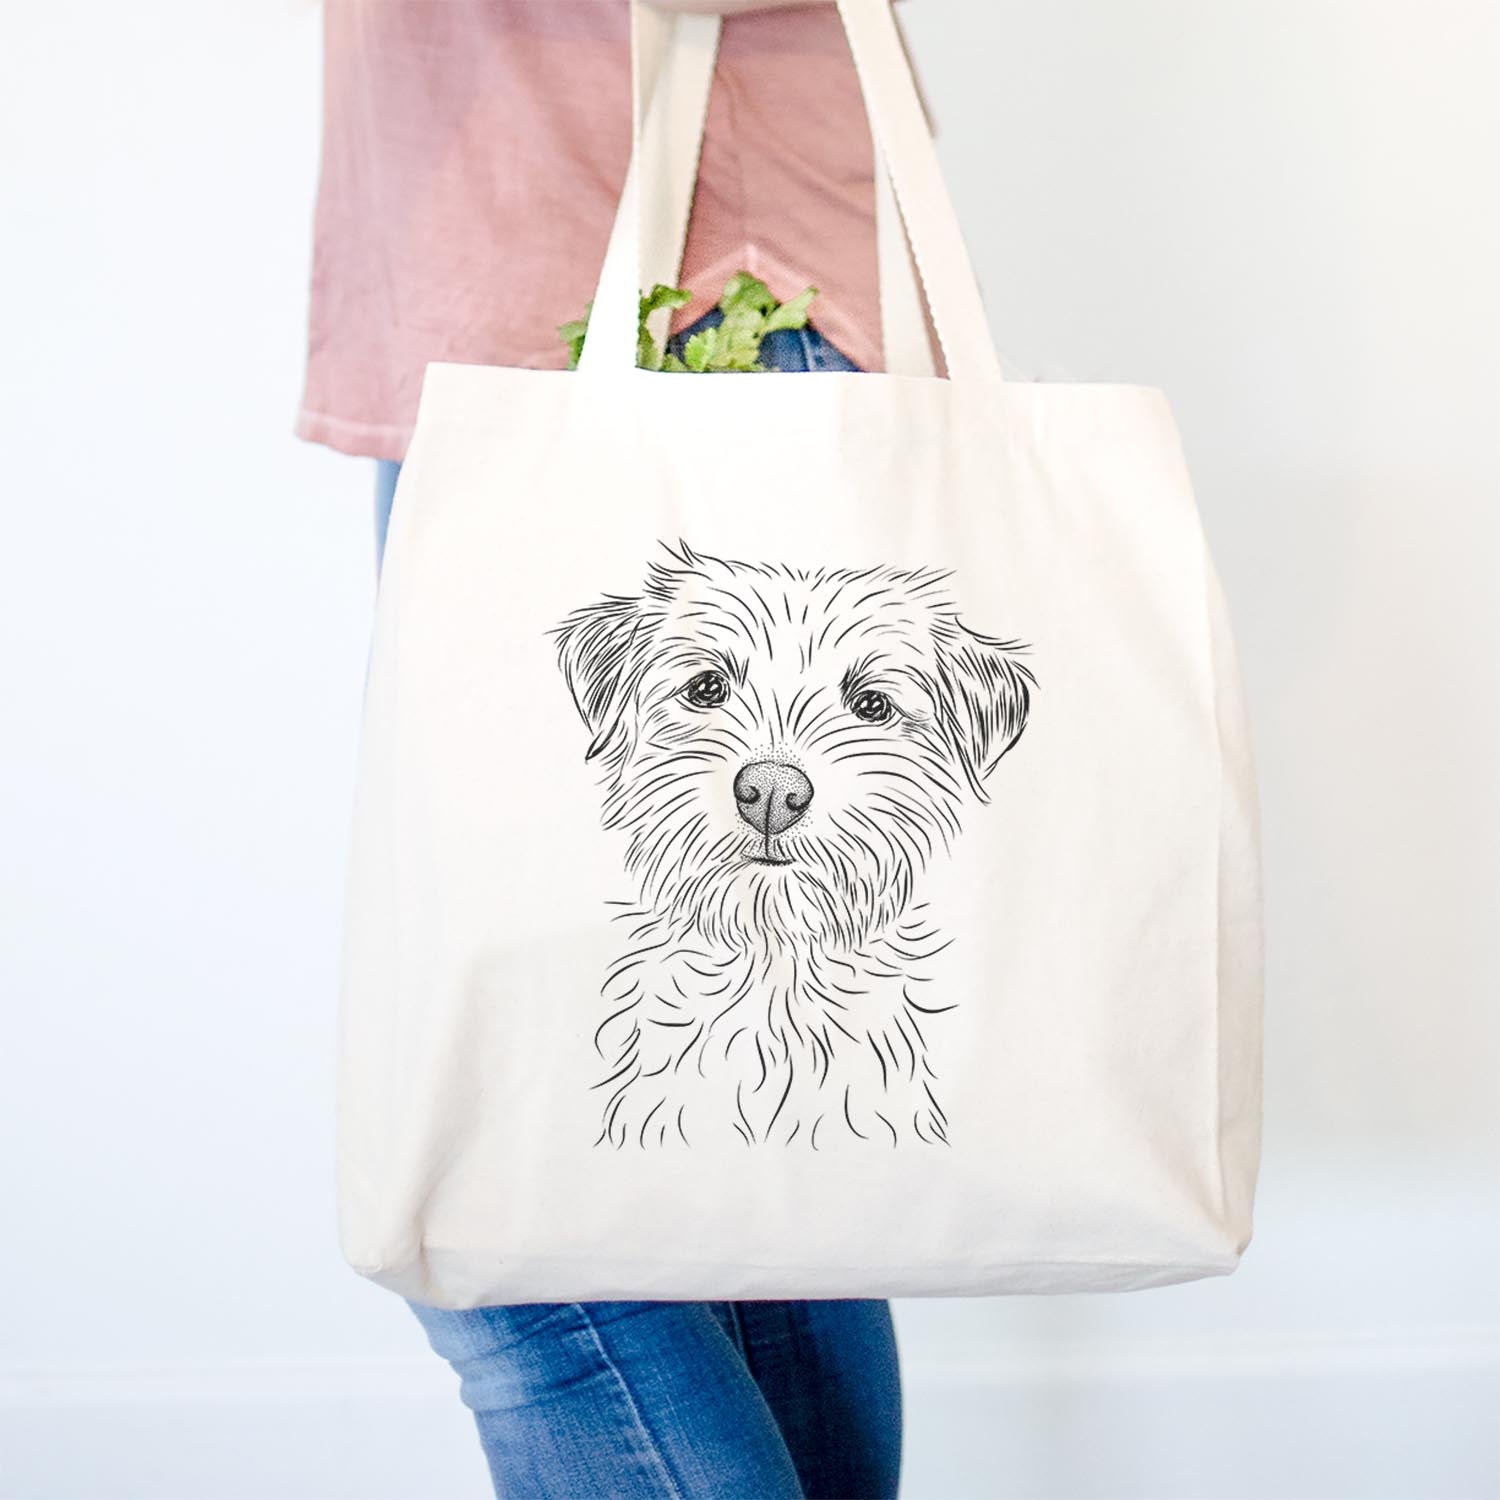 Benjamin the Border Terrier - Tote Bag